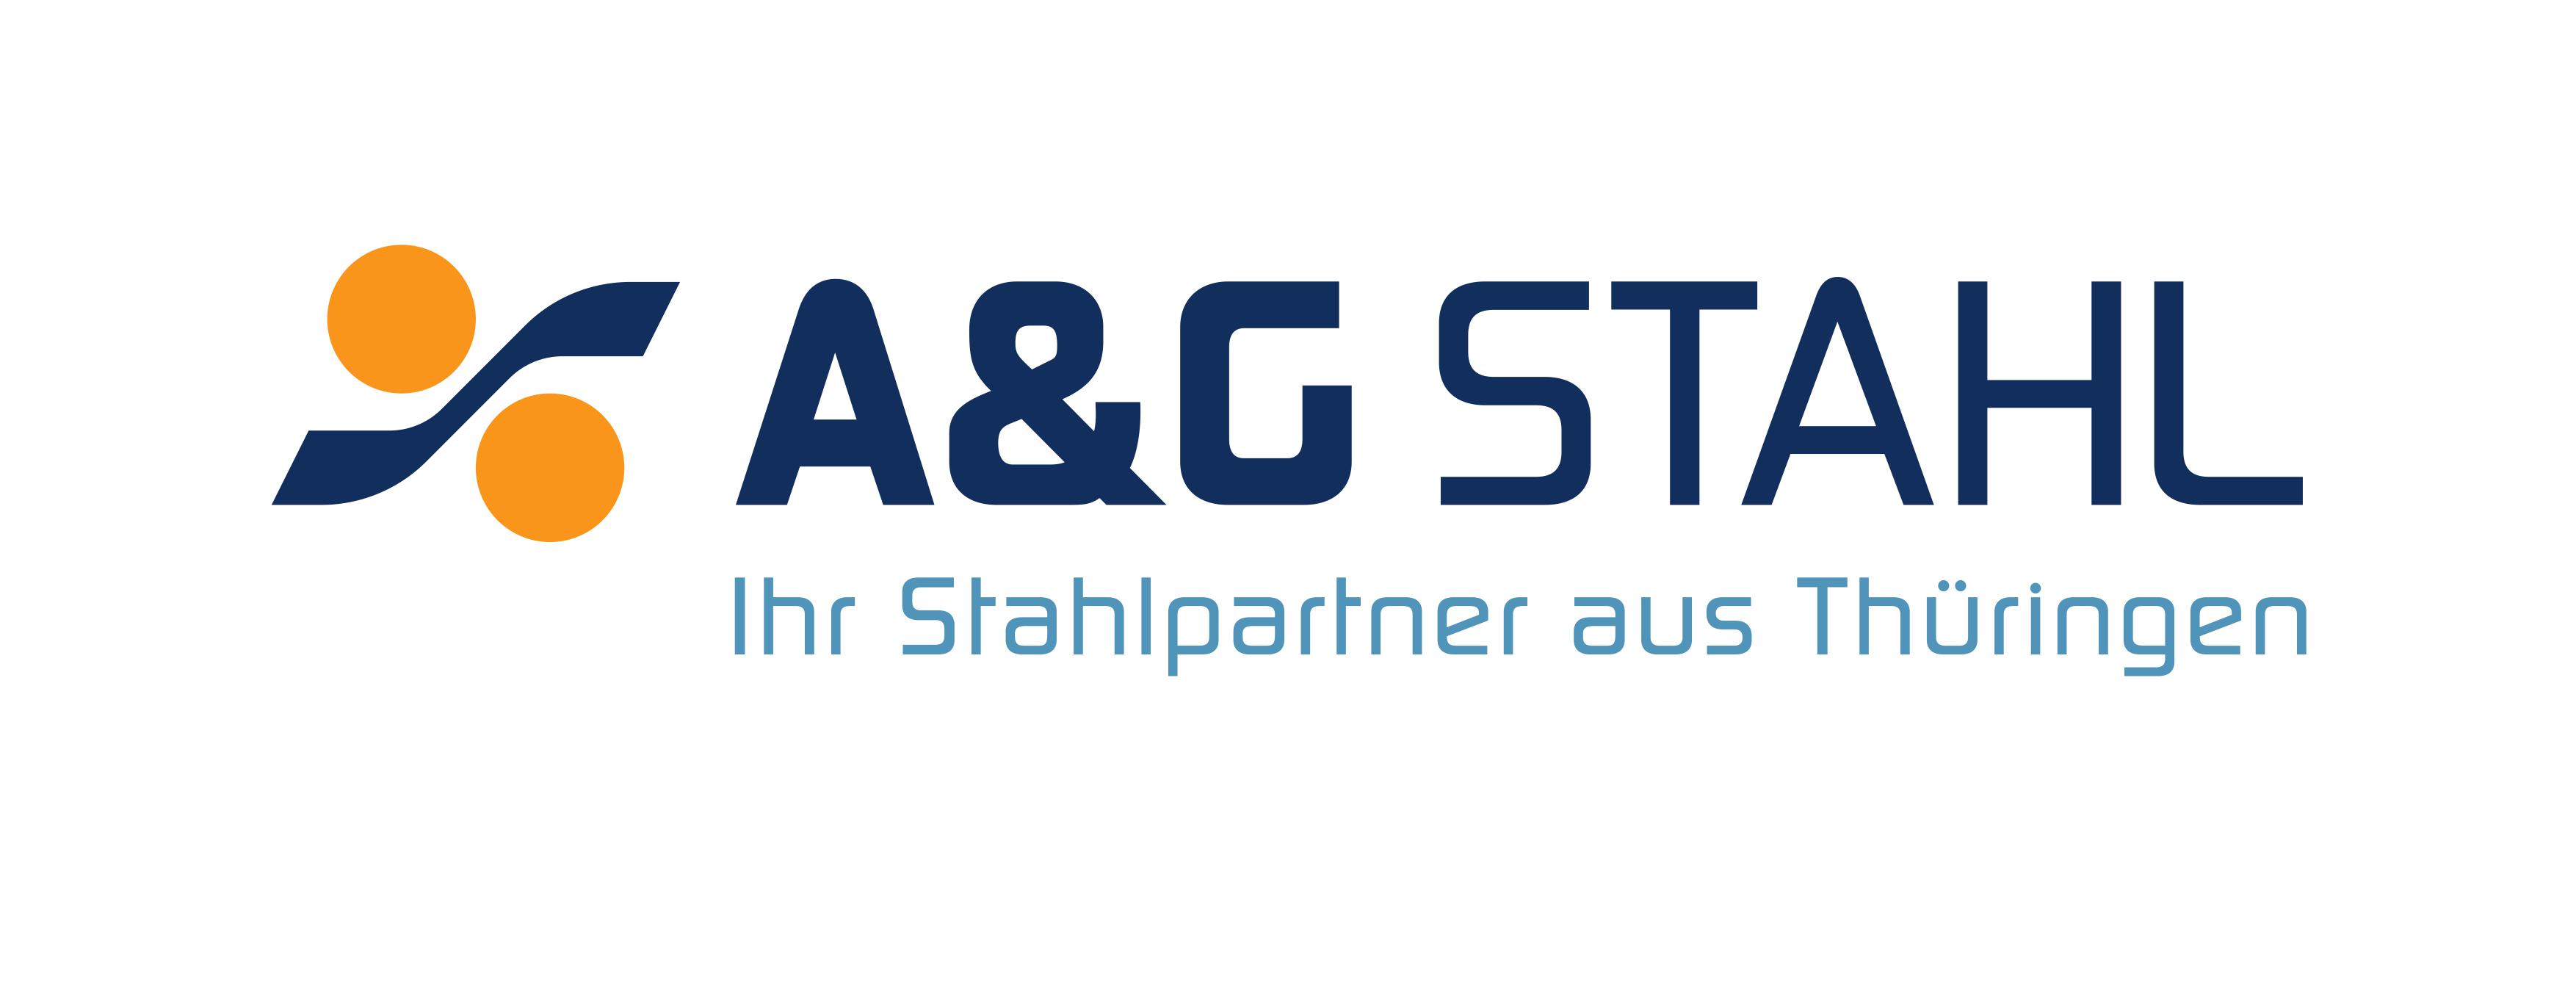 A&G Stahlverarbeitungs und -vertriebs GmbH